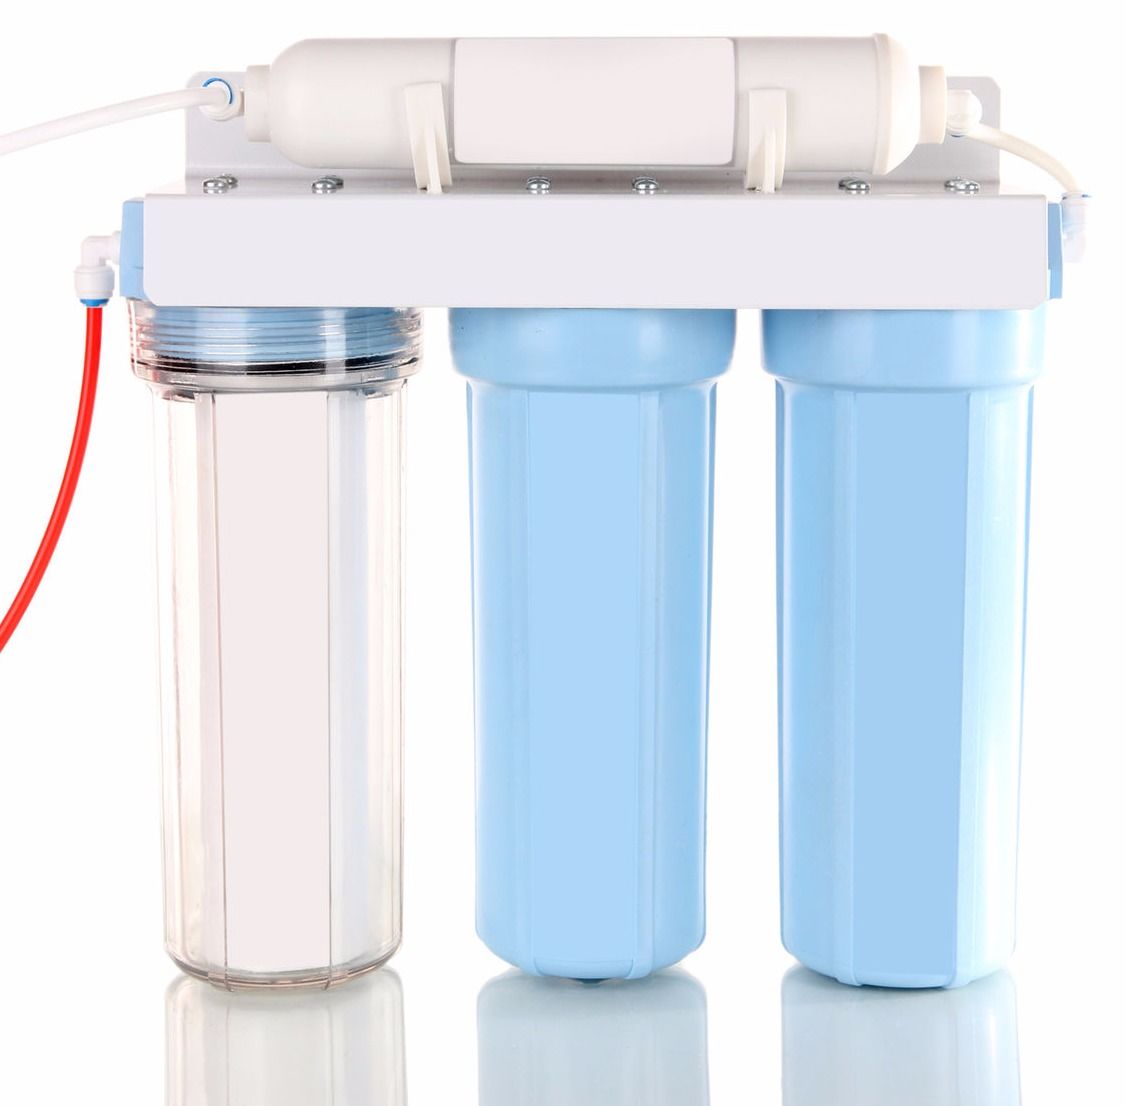 Купить фильтр для воды от извести. Проточный фильтр для воды. Фильтр для воды с индикатором загрязненности.